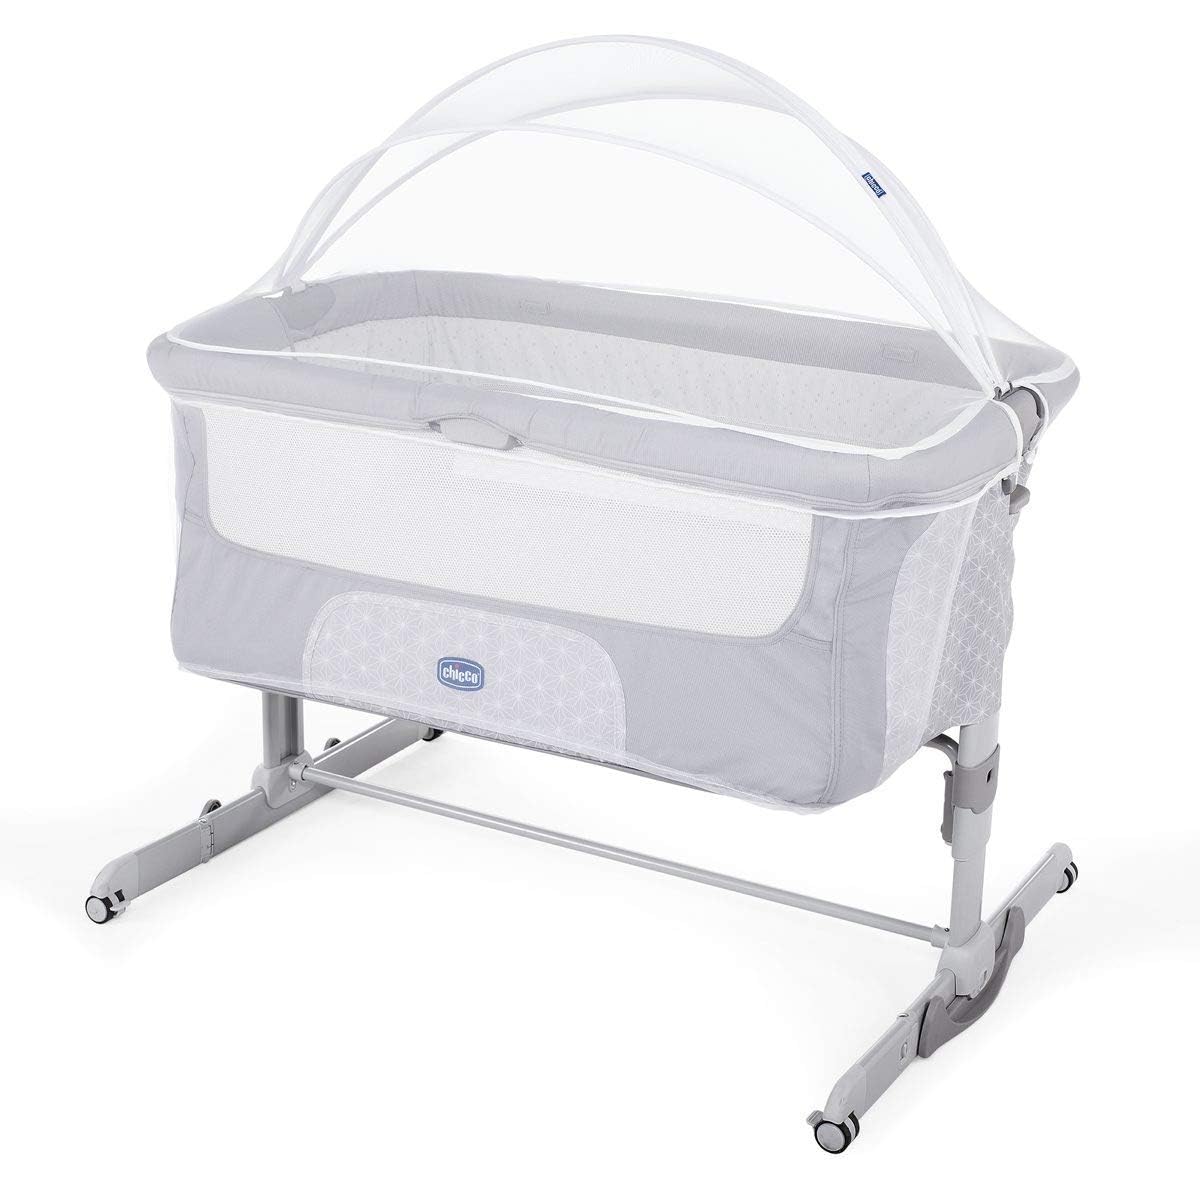 Chicco Next2Me Fliegengitter für Kinderbetten, kompatibel mit Chicco Next2Me-Kinderbetten, schmal, einfach anzubringen, Praktischer Mittelreißverschluss, volle Belüftung, 0-6 Monate/9 kg, Weiß